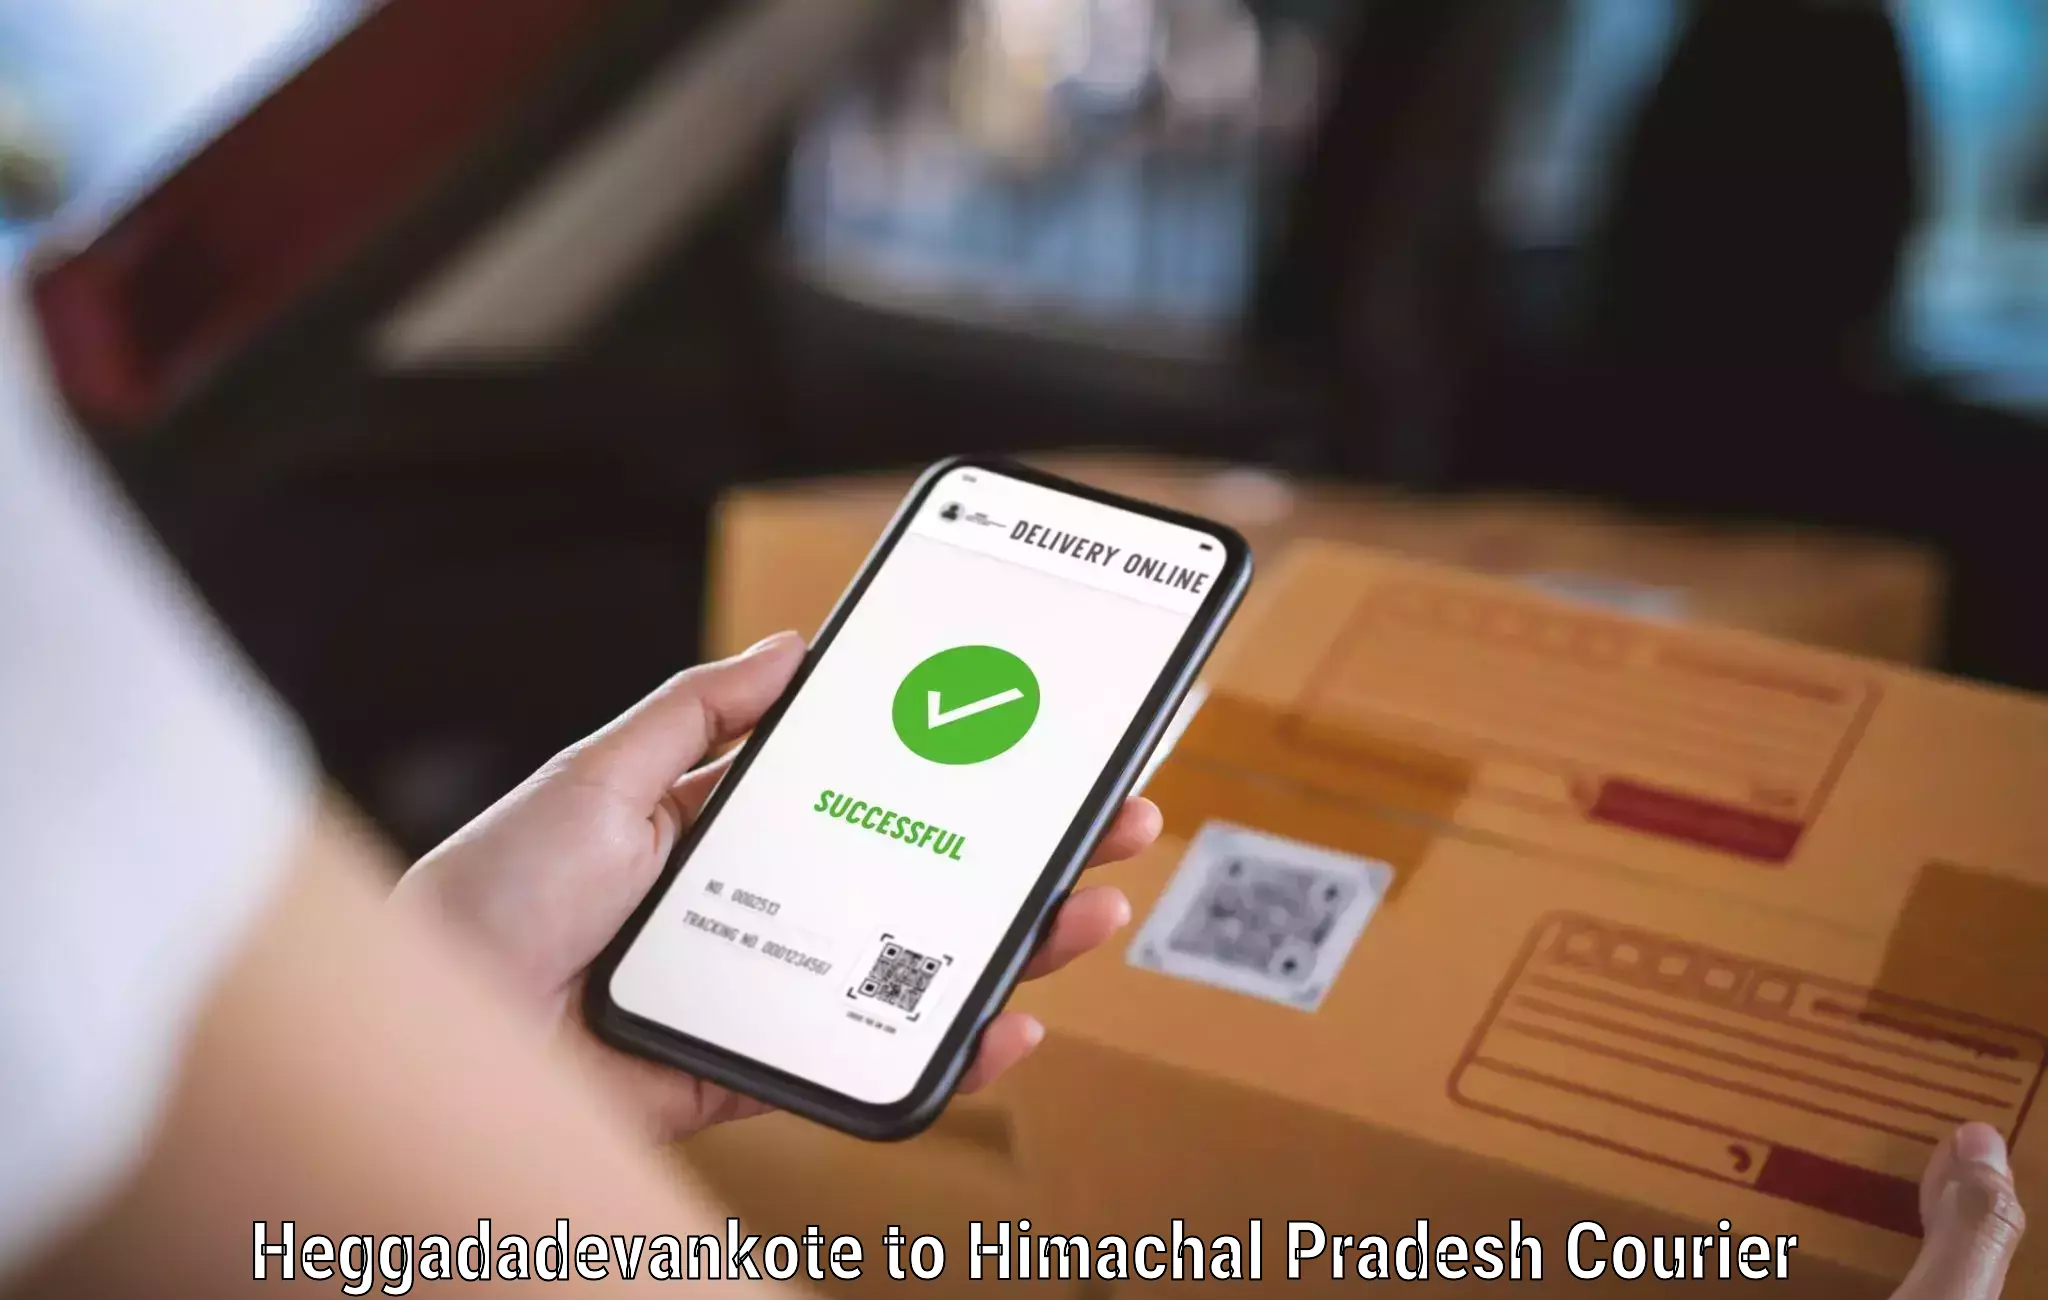 Package tracking Heggadadevankote to Chintpurni